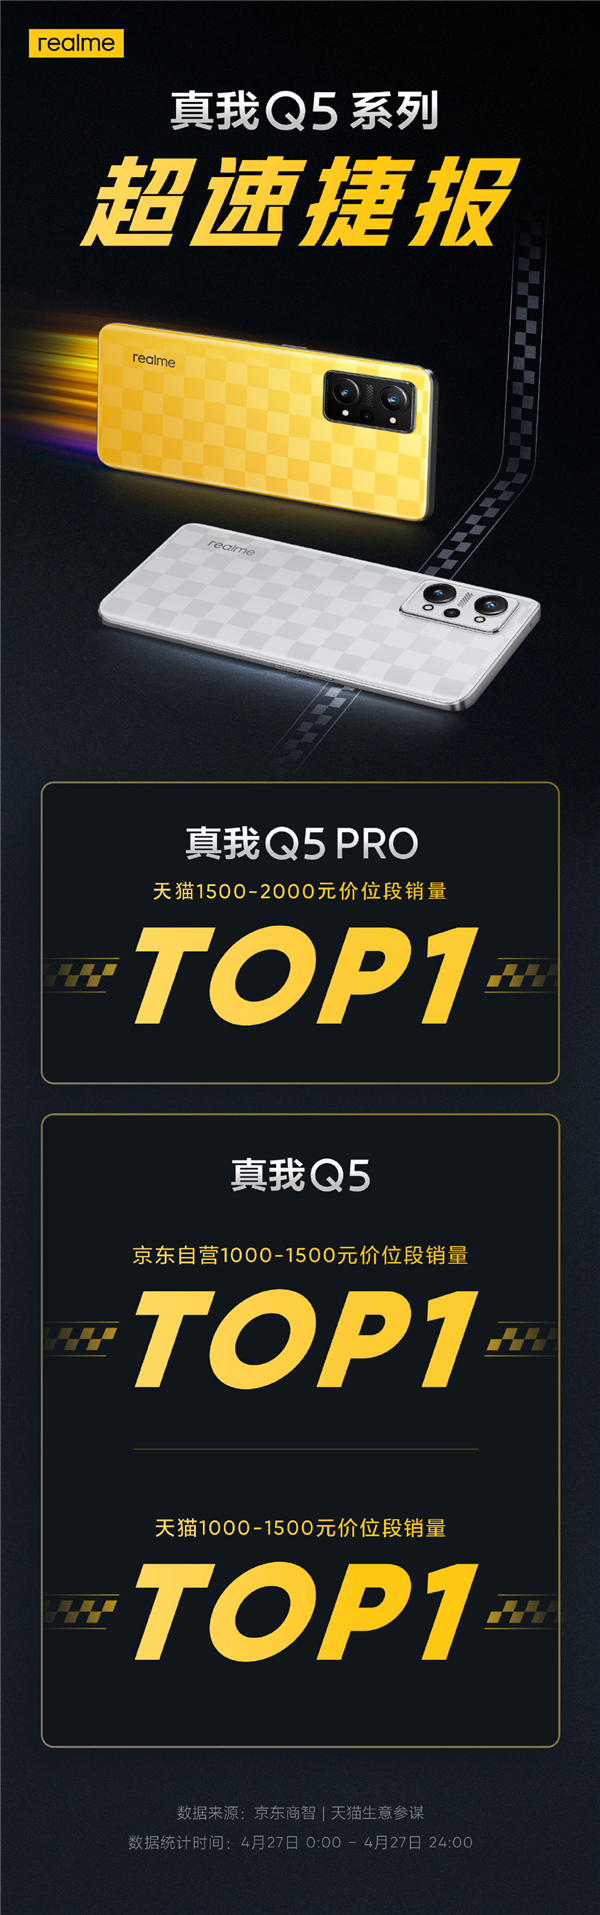 新一代千元机皇！realme Q5 Pro获天猫1500-2000元价位段销量冠军